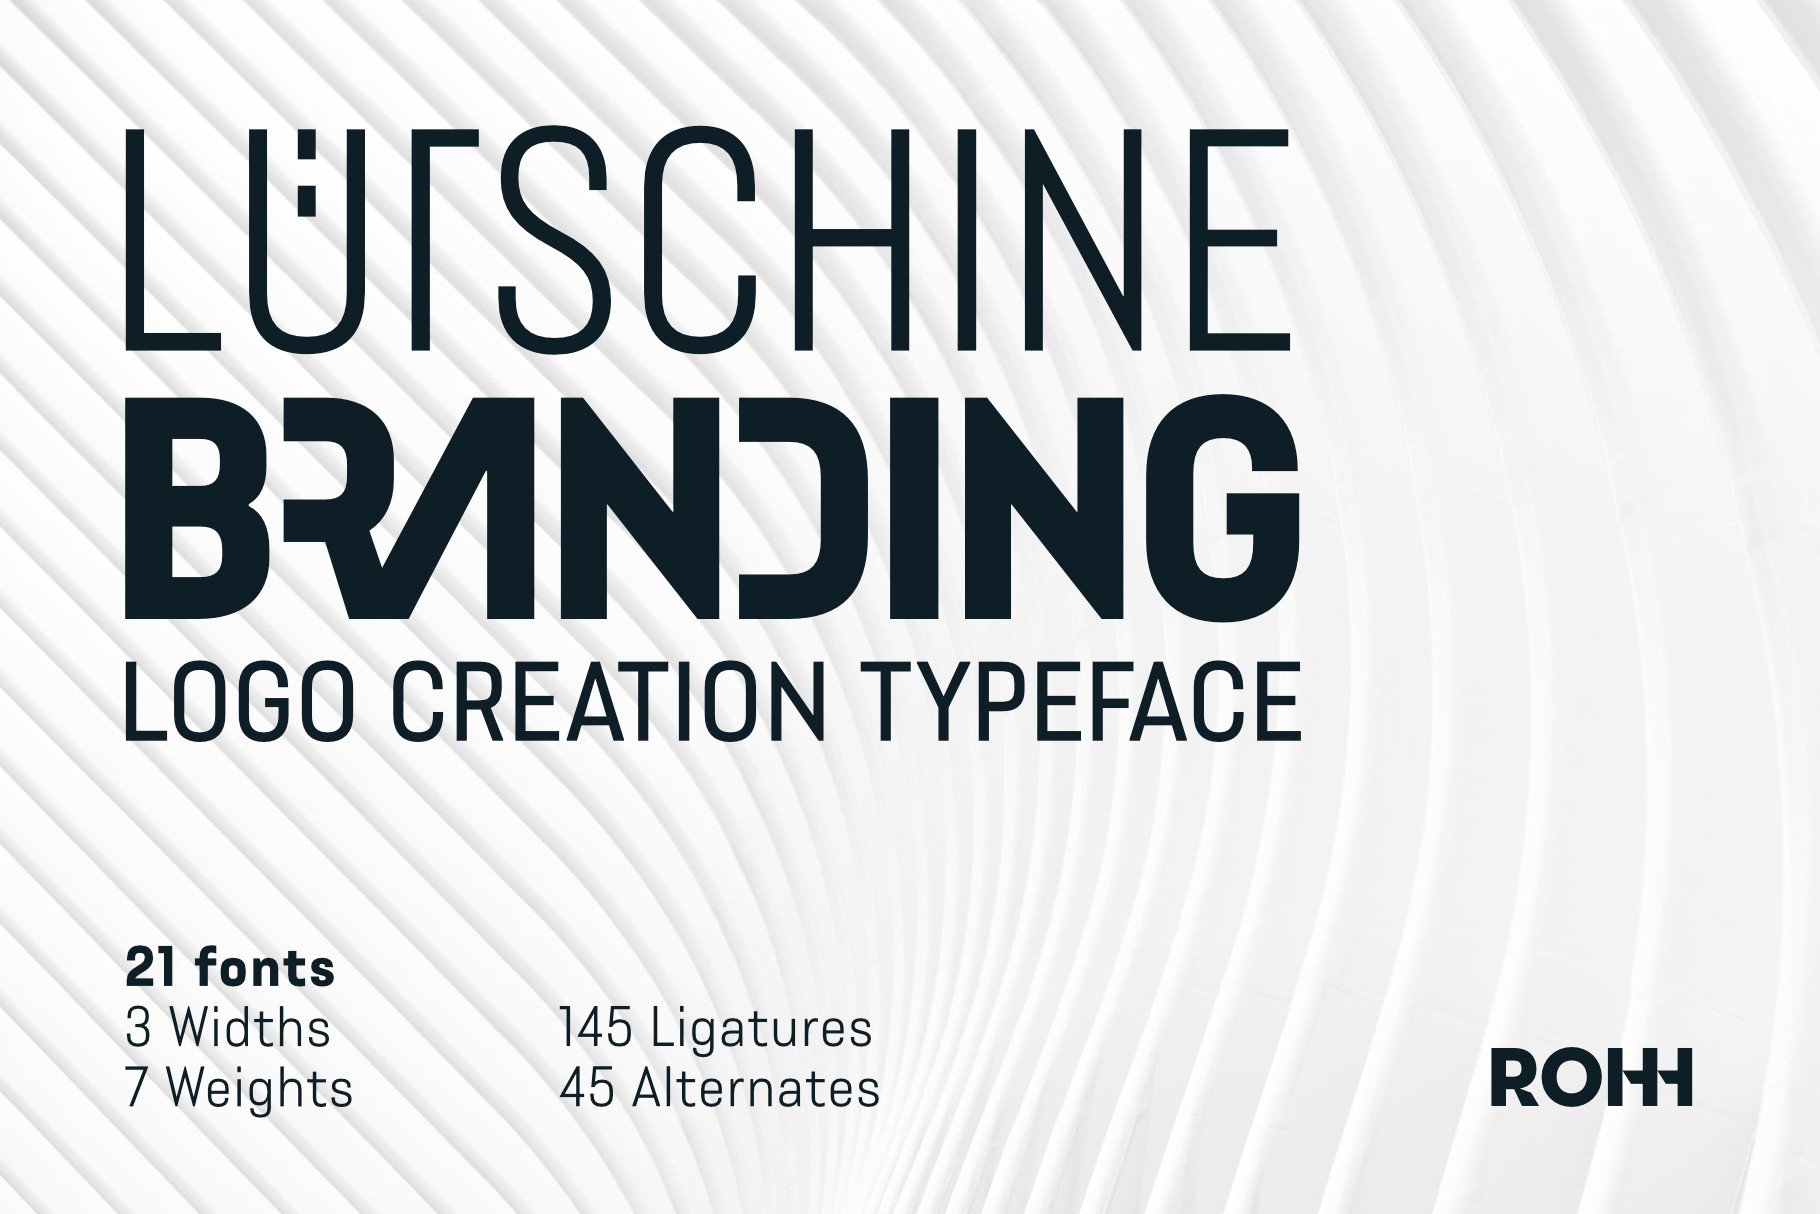 Lütschine Branding – Logo Creator Typeface